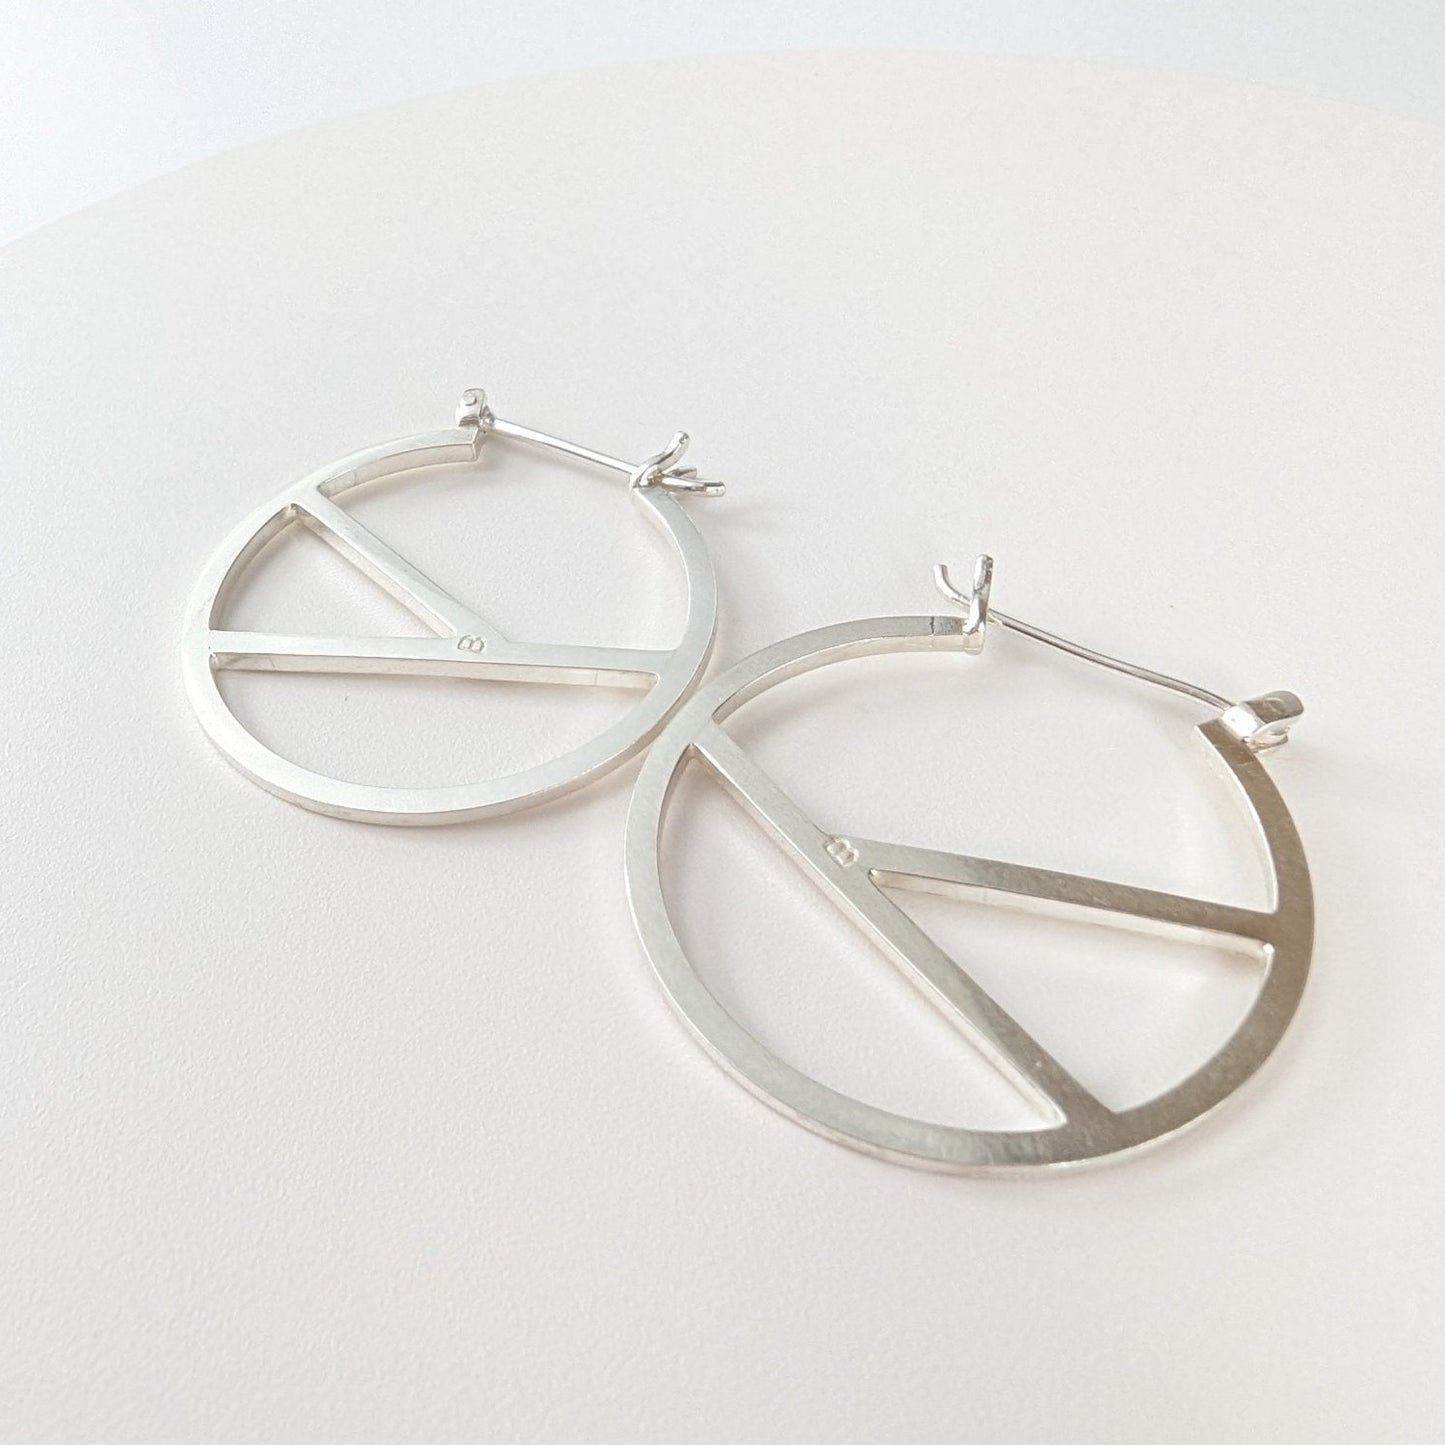 Geometric silver hoop earrings - Booblinka Jewellery